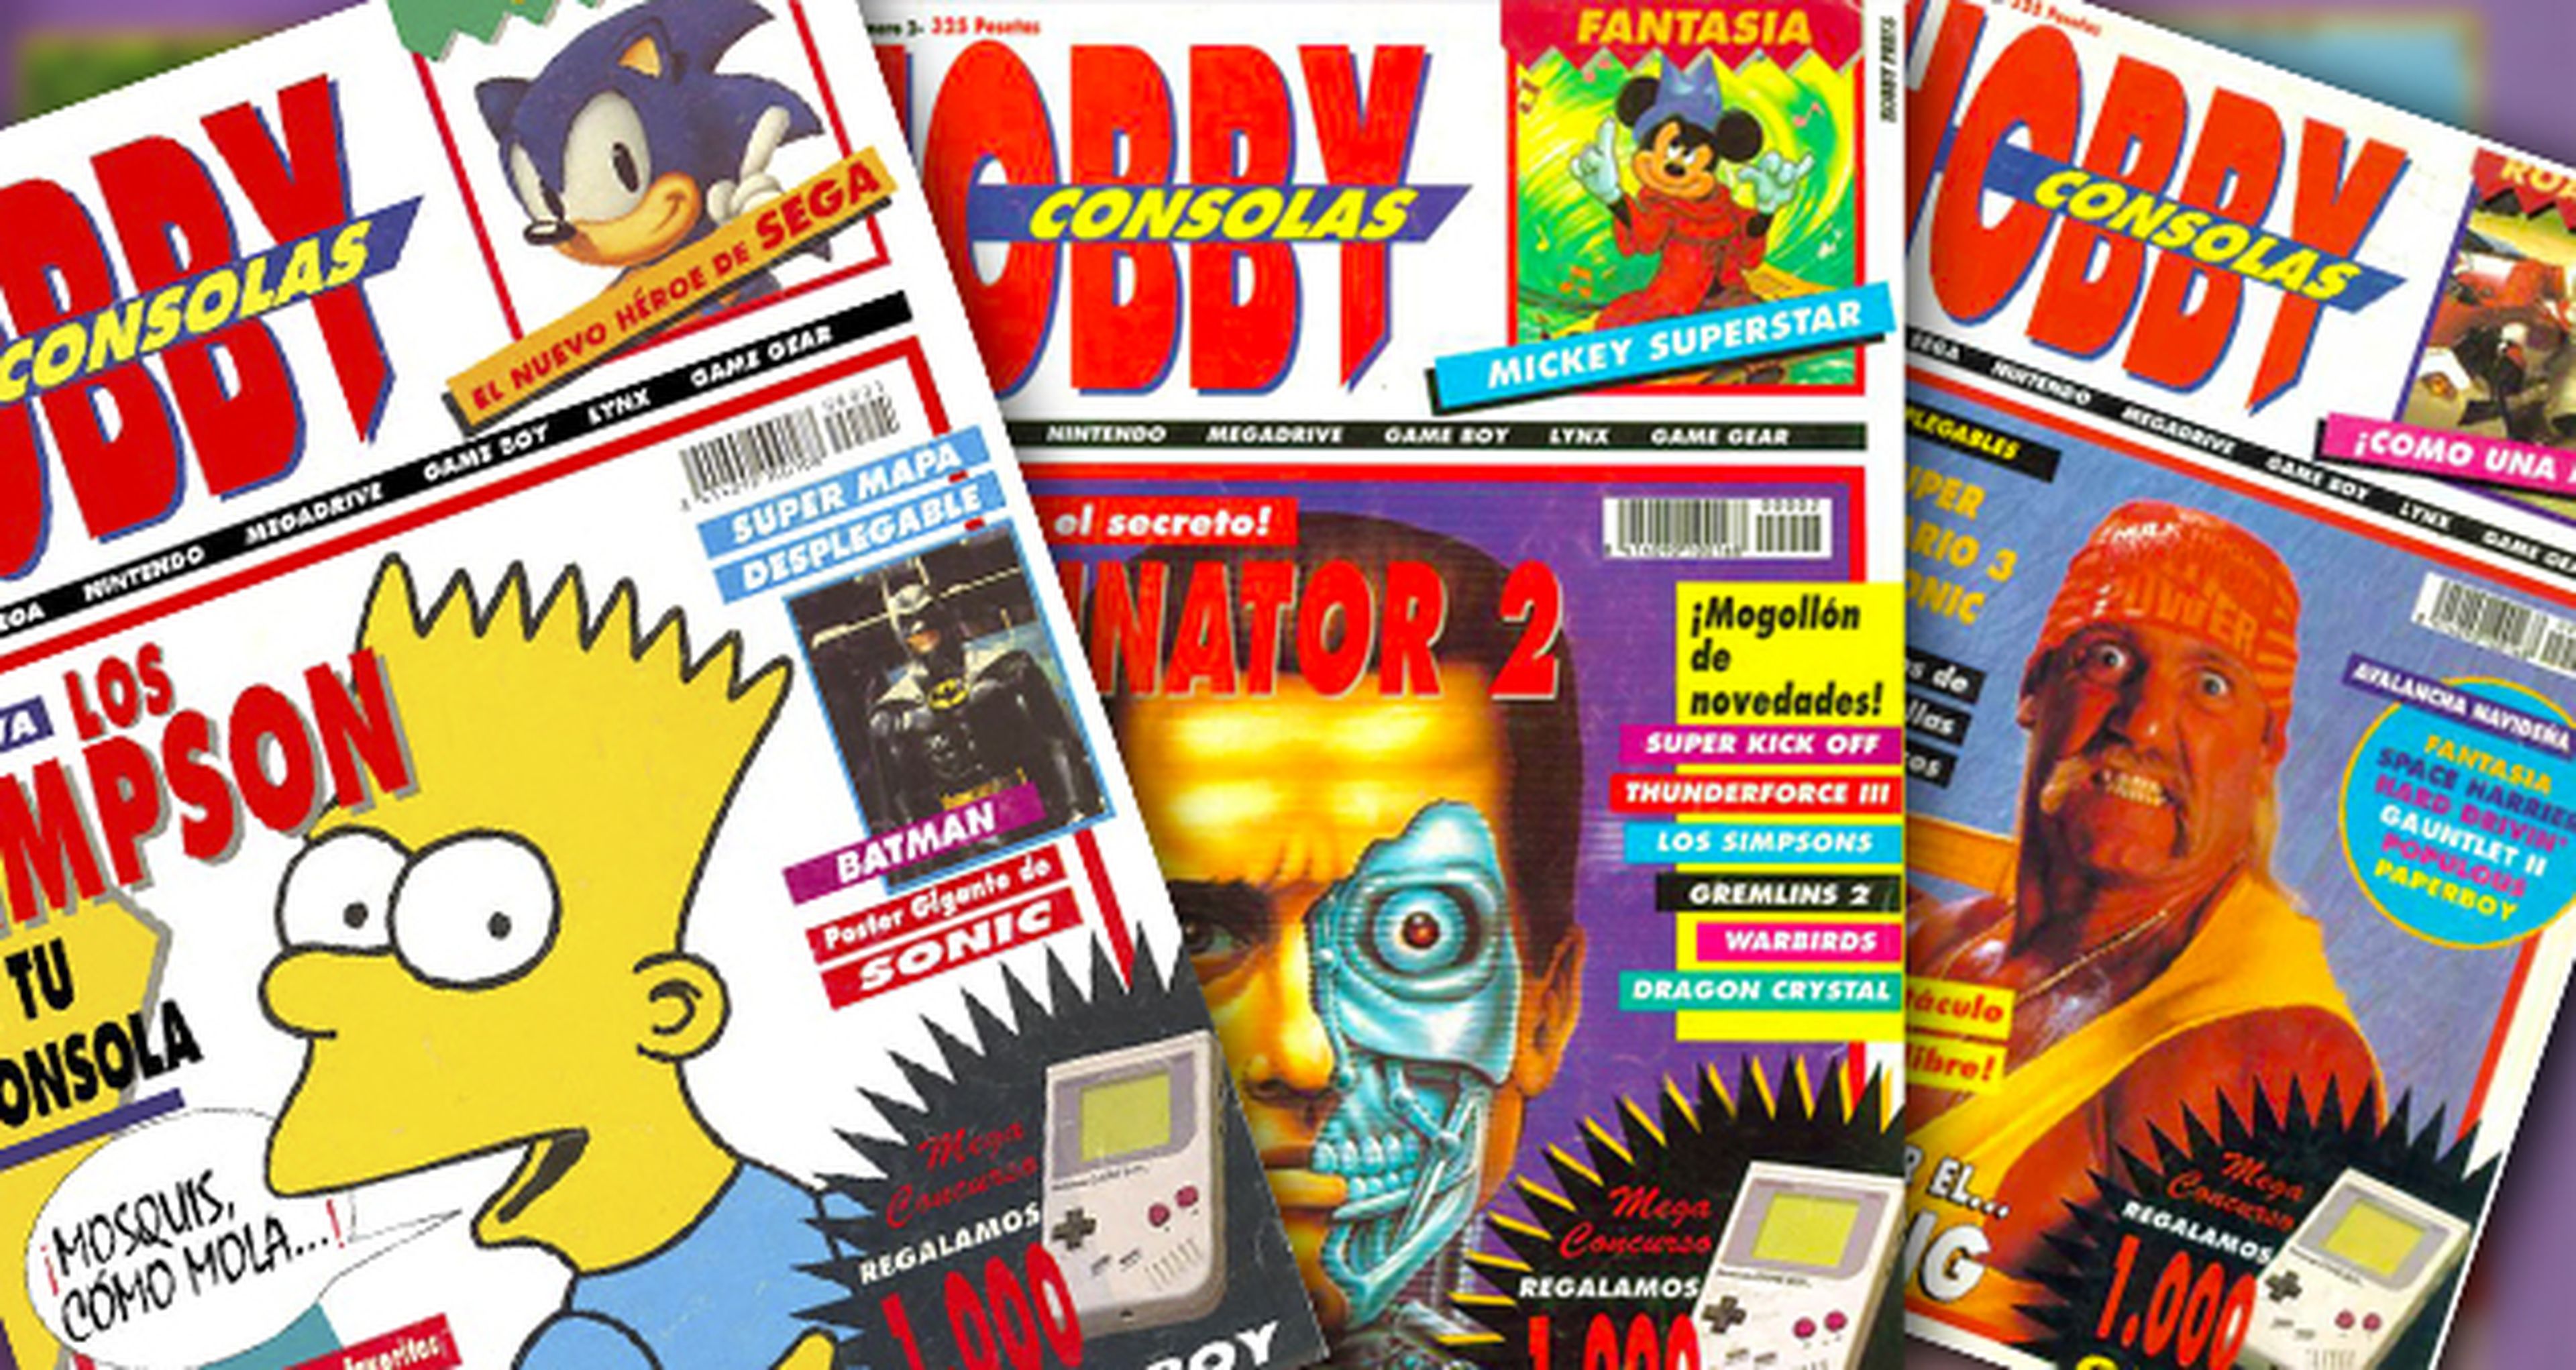 La antigua Hobby Consolas: Sus primeras portadas